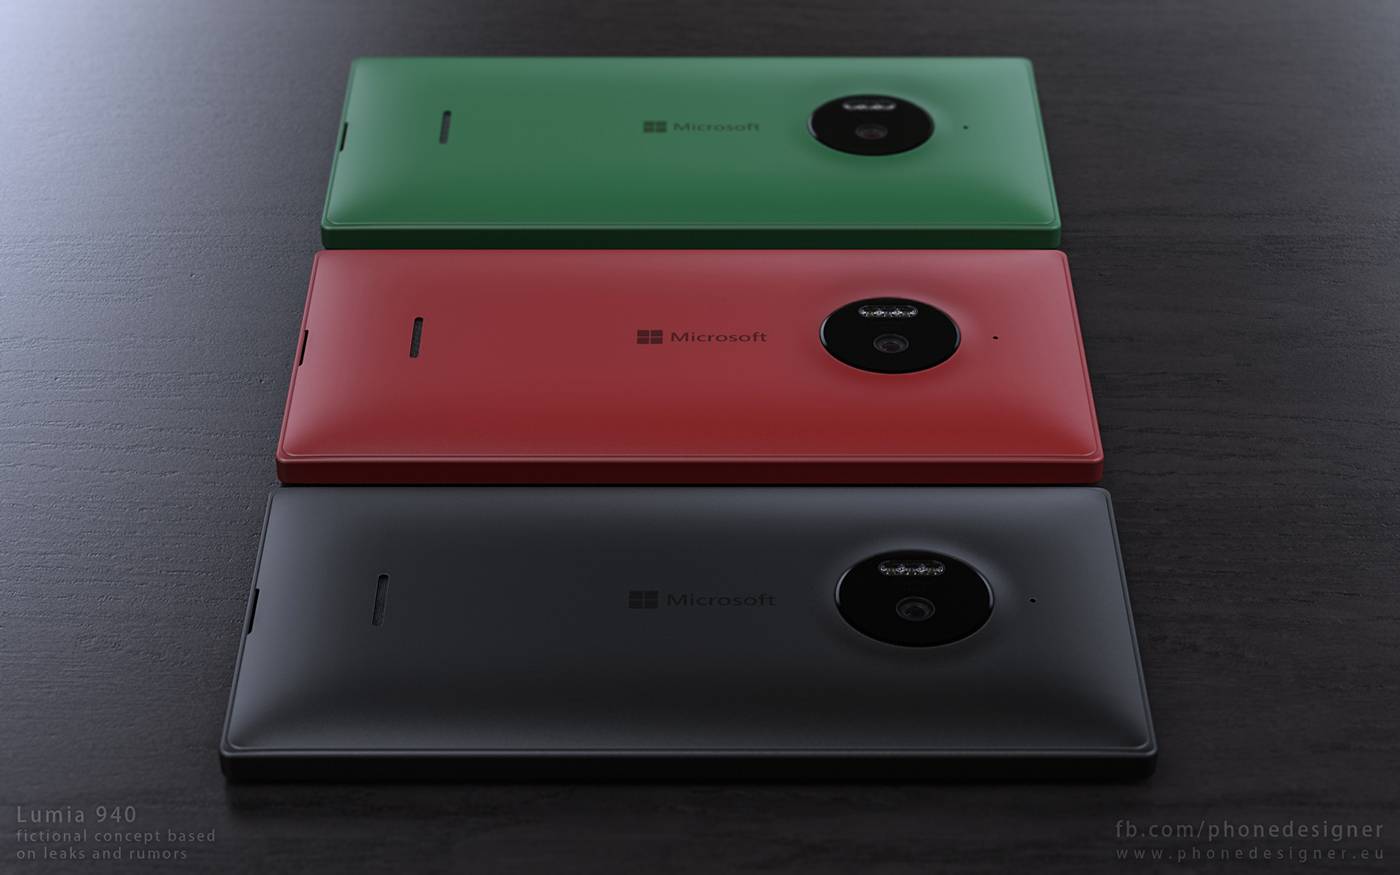 Lumia 940